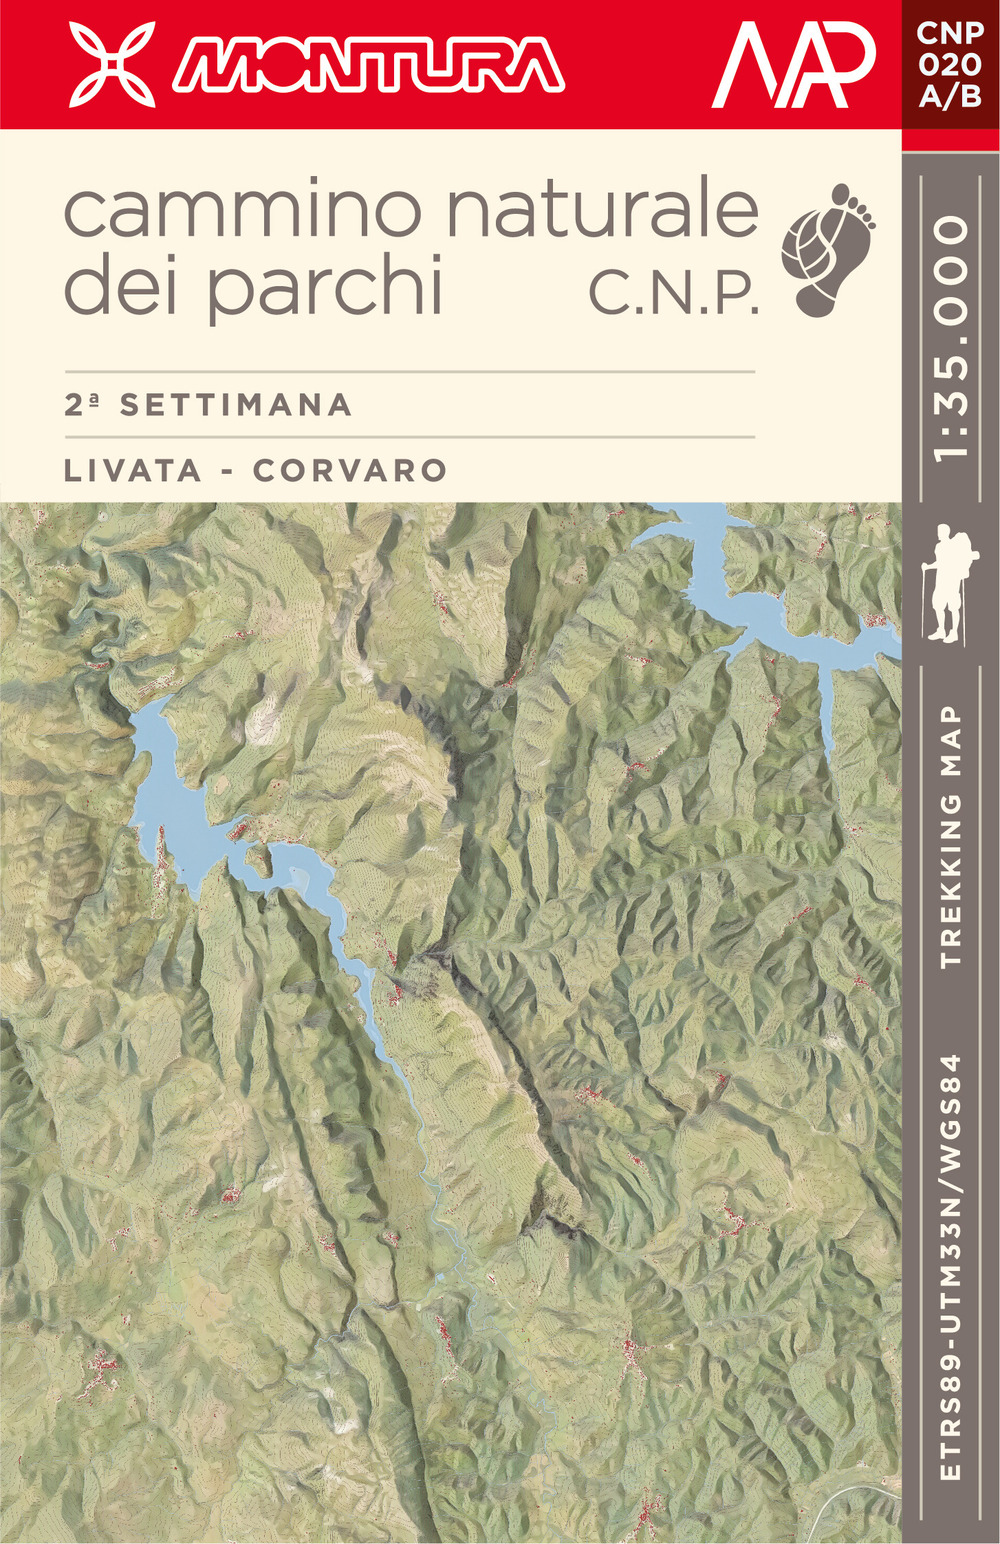 Trekking Map. Cammino Naturale dei Parchi. 2ª settimana: Livata - Corvaro. Con Carta geografica